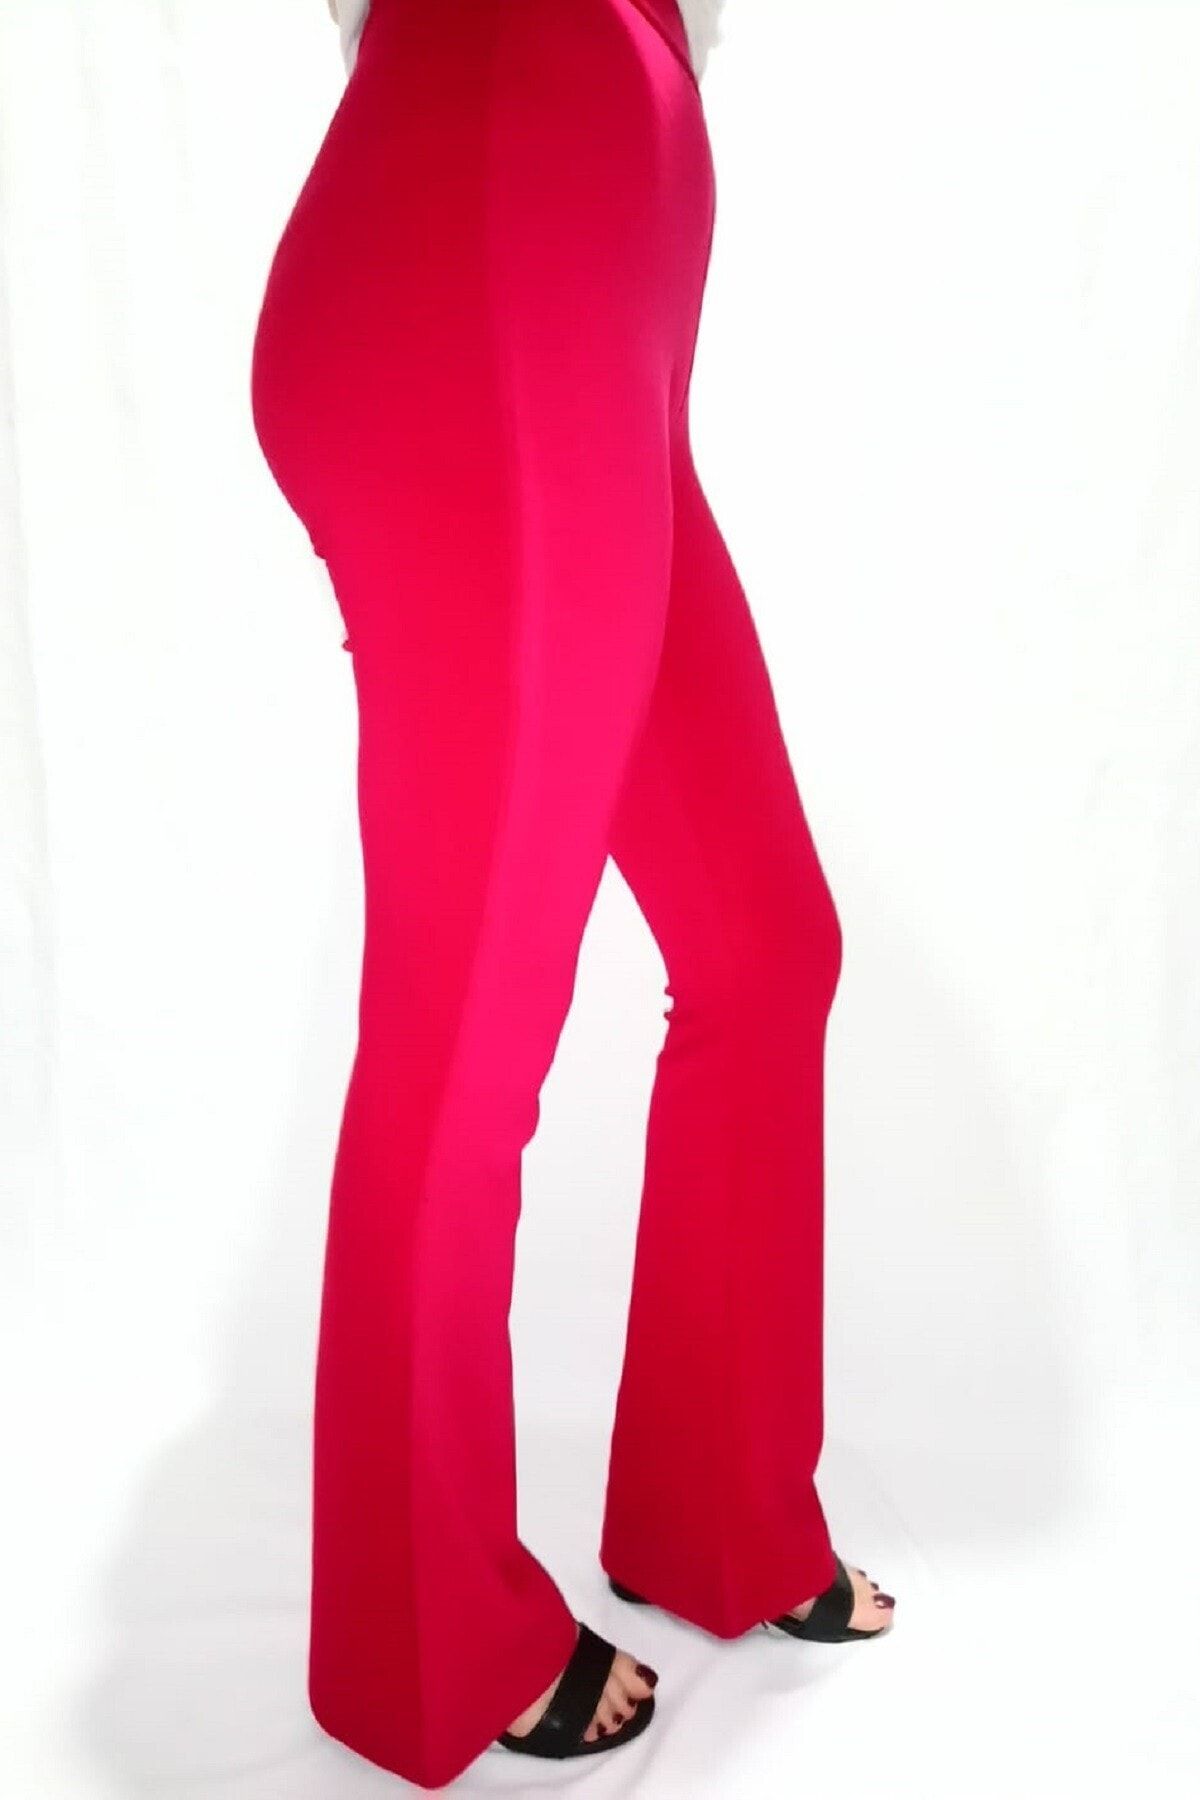 Modoo Tekstil Kadın Kırmızı Rengi Likralı Düz Uzun Disko Tayt